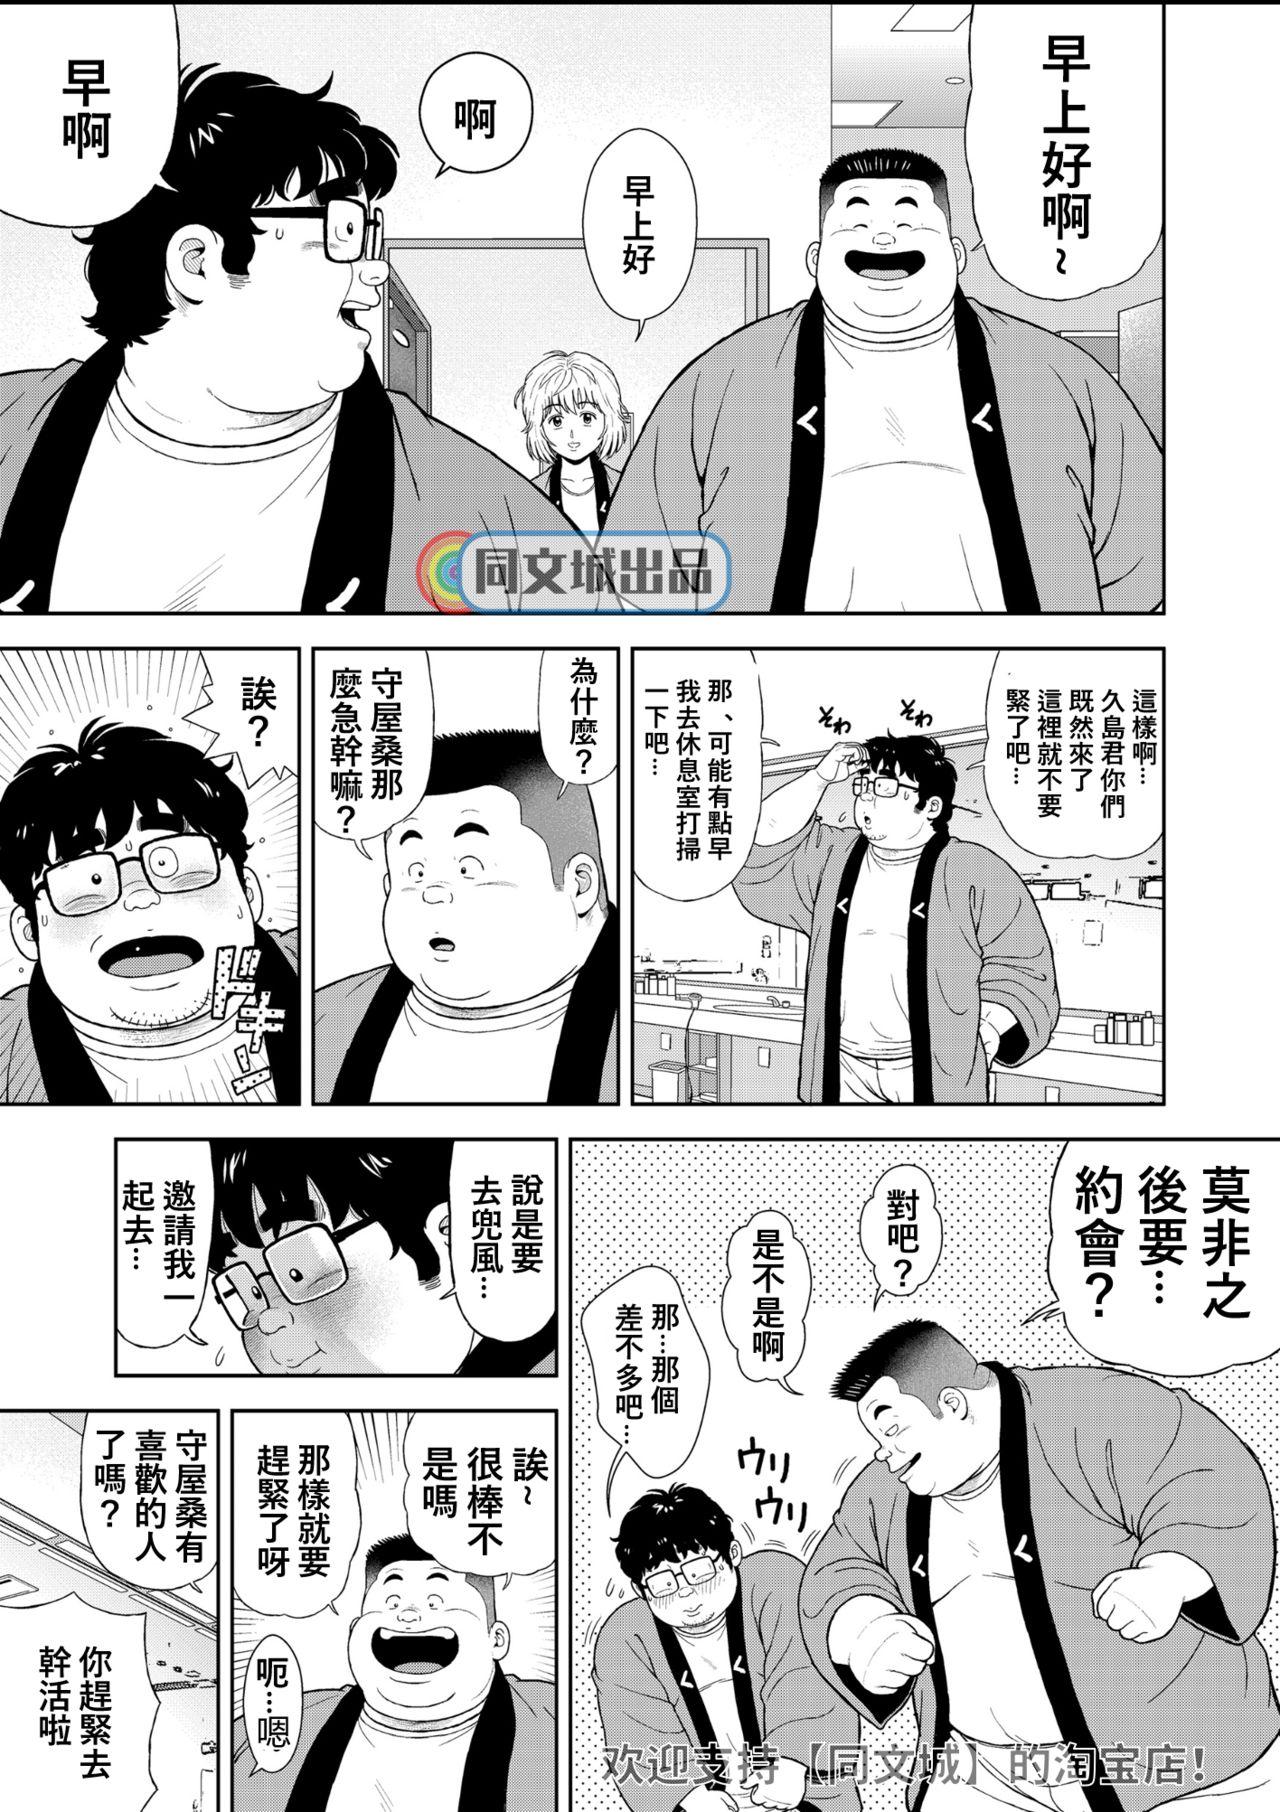 Fun Kunoyu Juuyonhatsume Makyuu de Otose - Original Blackcock - Page 11